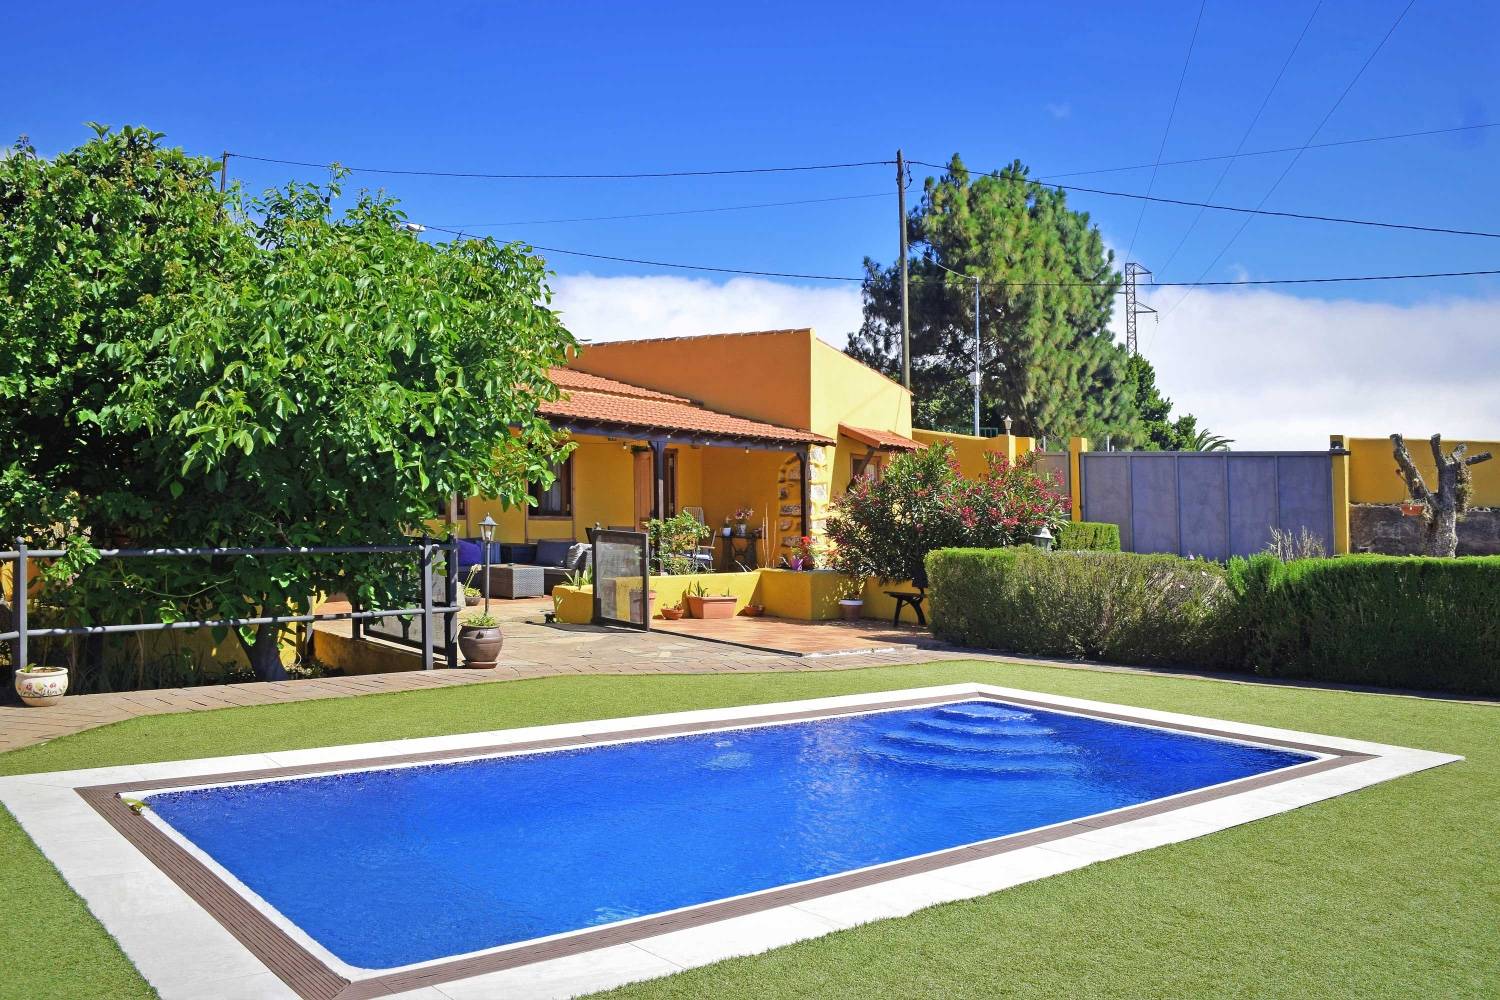 Rustik feriehus med privat pool område for en rolig ferie på øen Tenerife